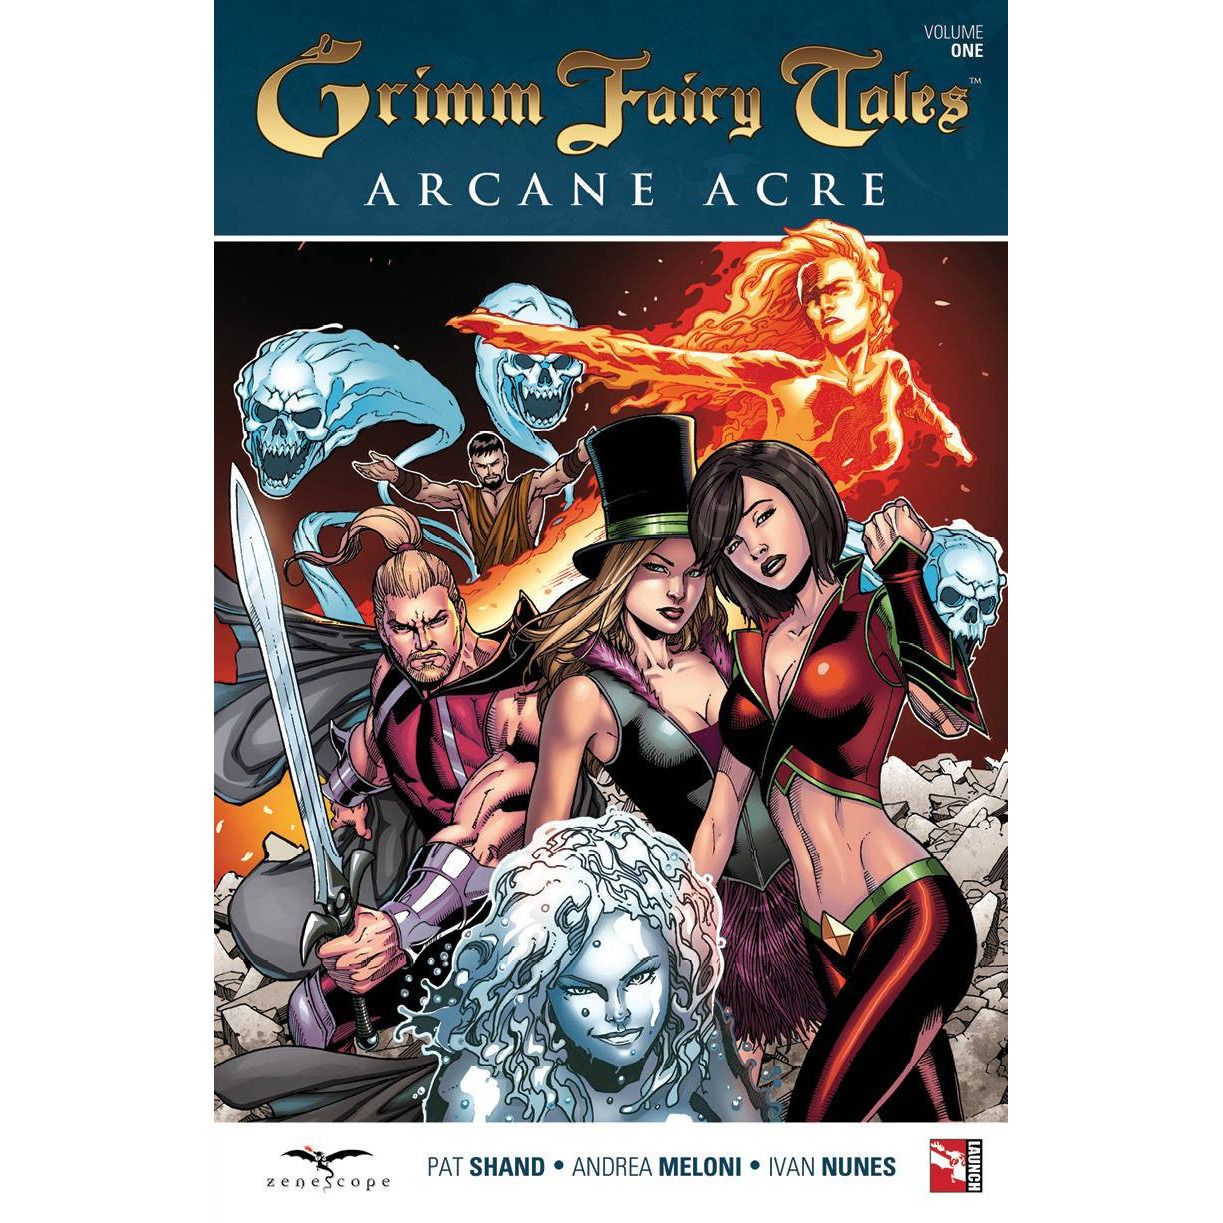  Grimm Fairy Tales: Arcane Acre Vol. 1 TP Uncanny!